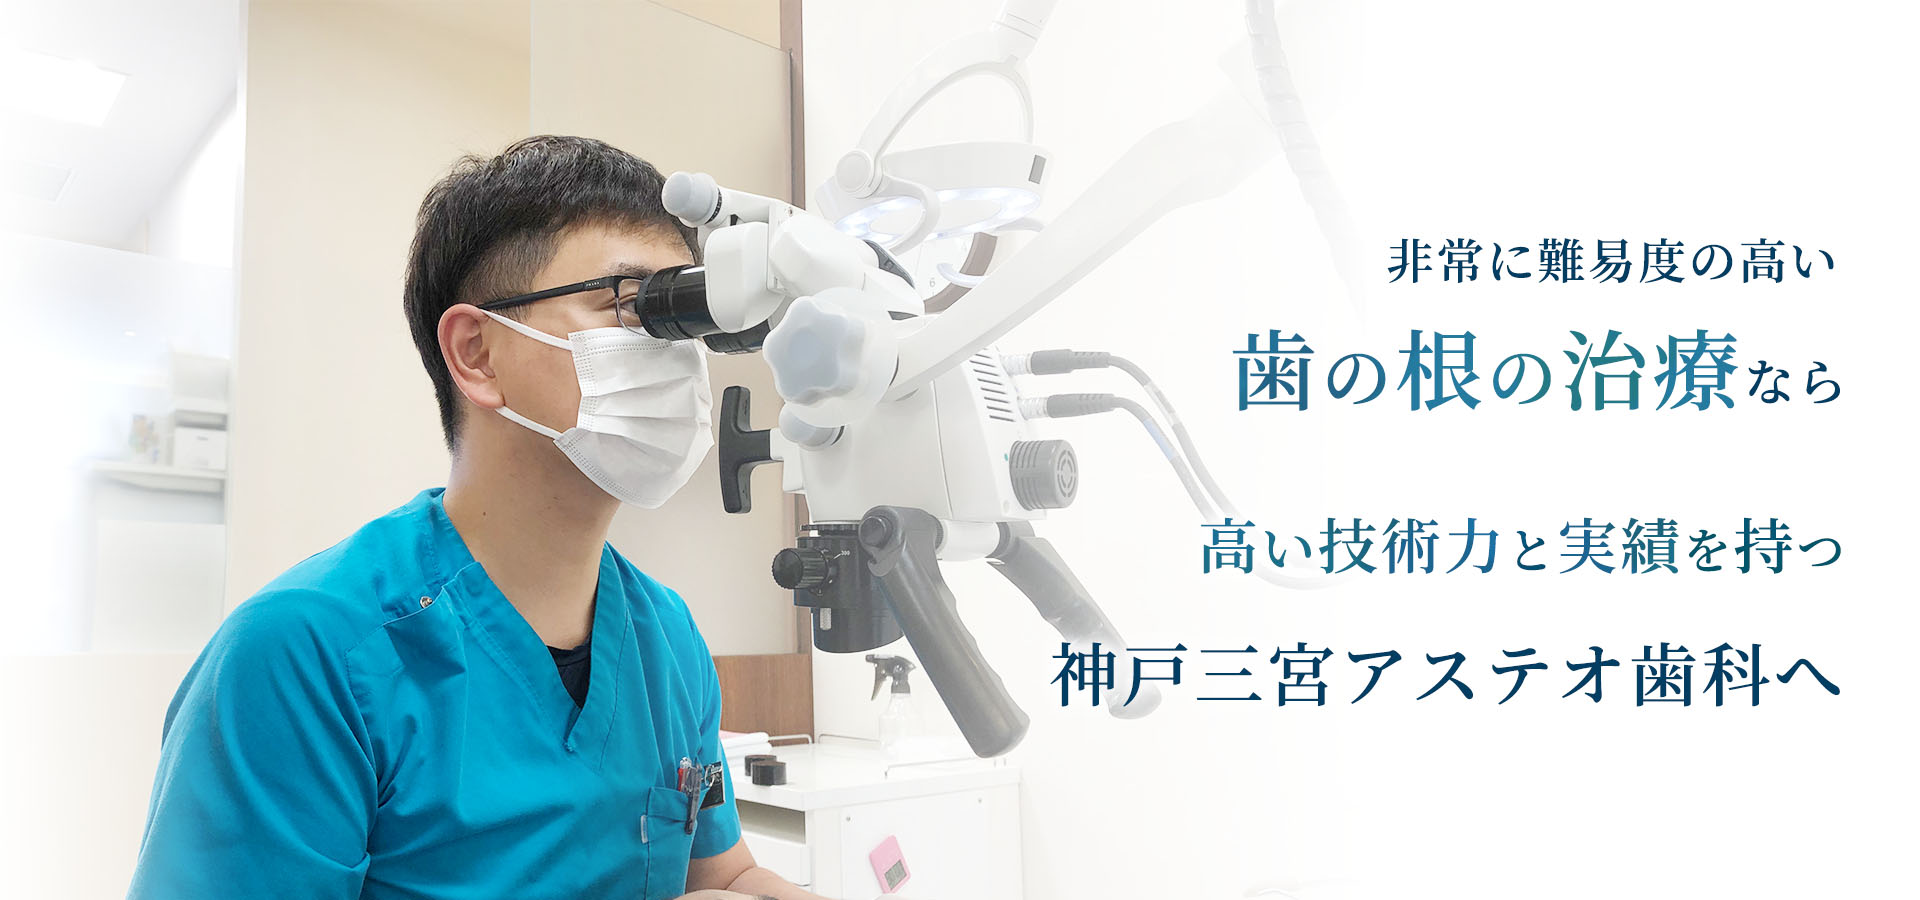 三ノ宮で根管治療（歯根治療）なら神戸三宮アステオ歯科へ